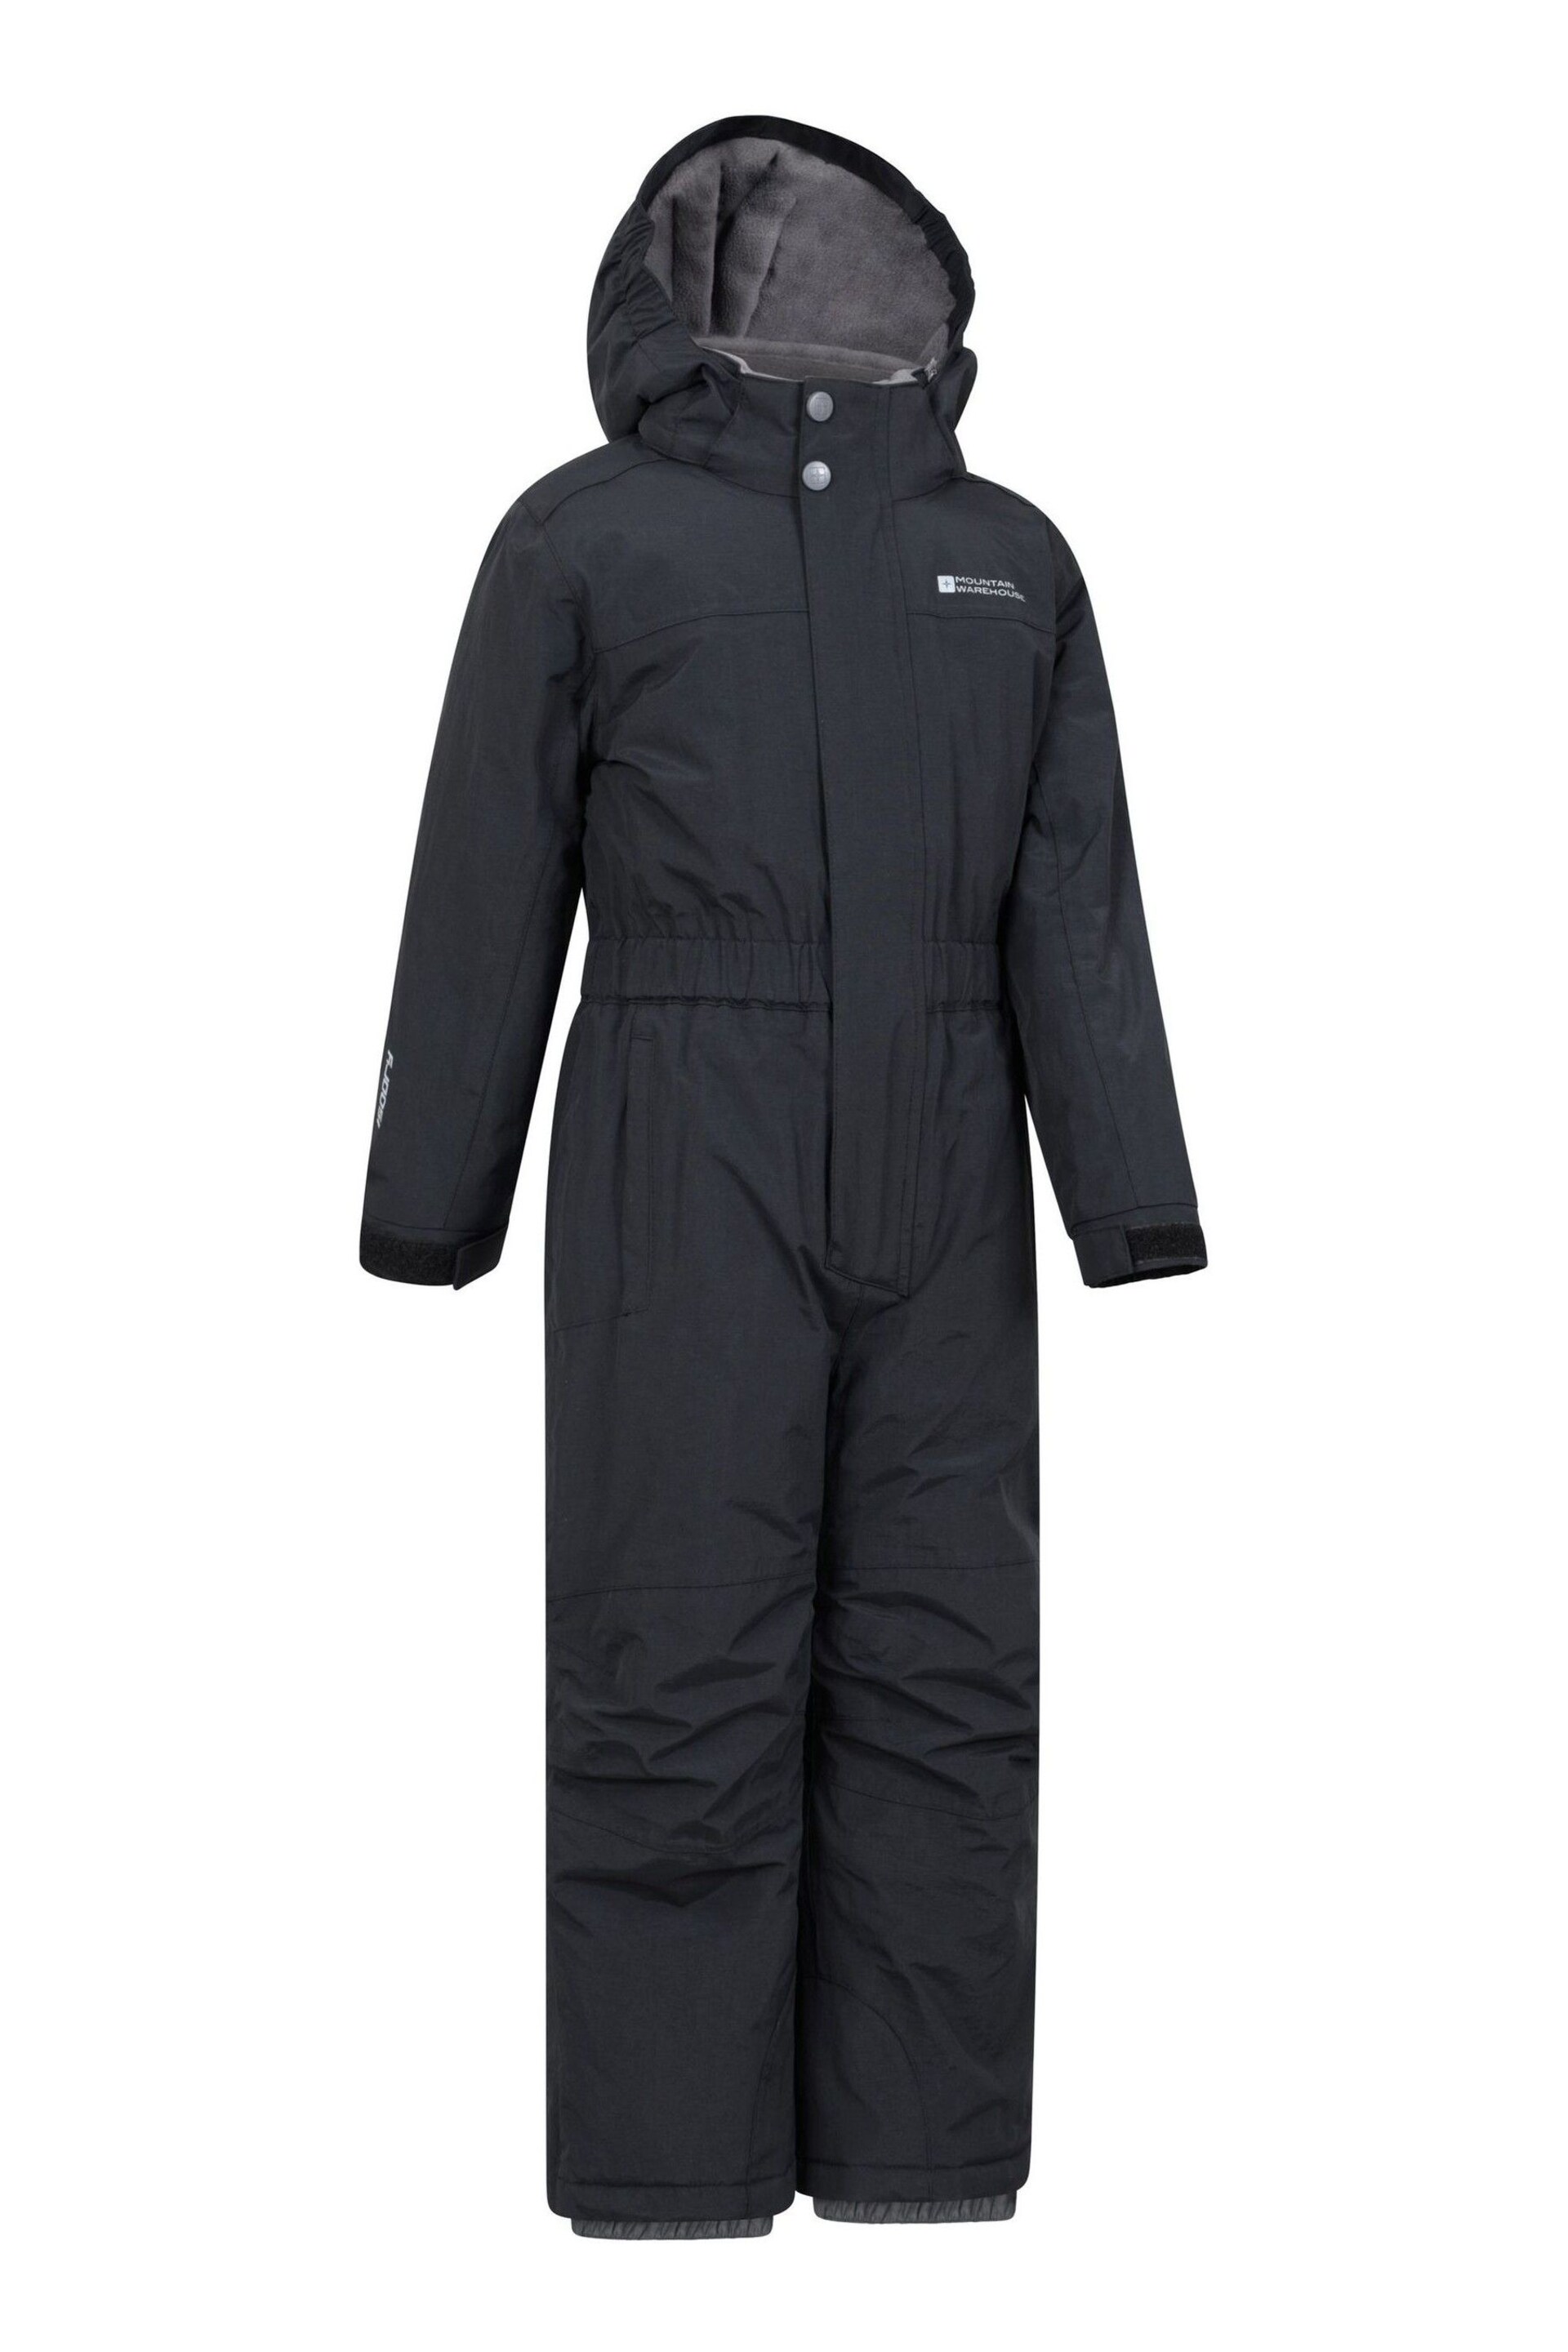 Mountain Warehouse Black Cloud Kids All In One Waterproof Fleece Lined Snowsuit - Image 2 of 6